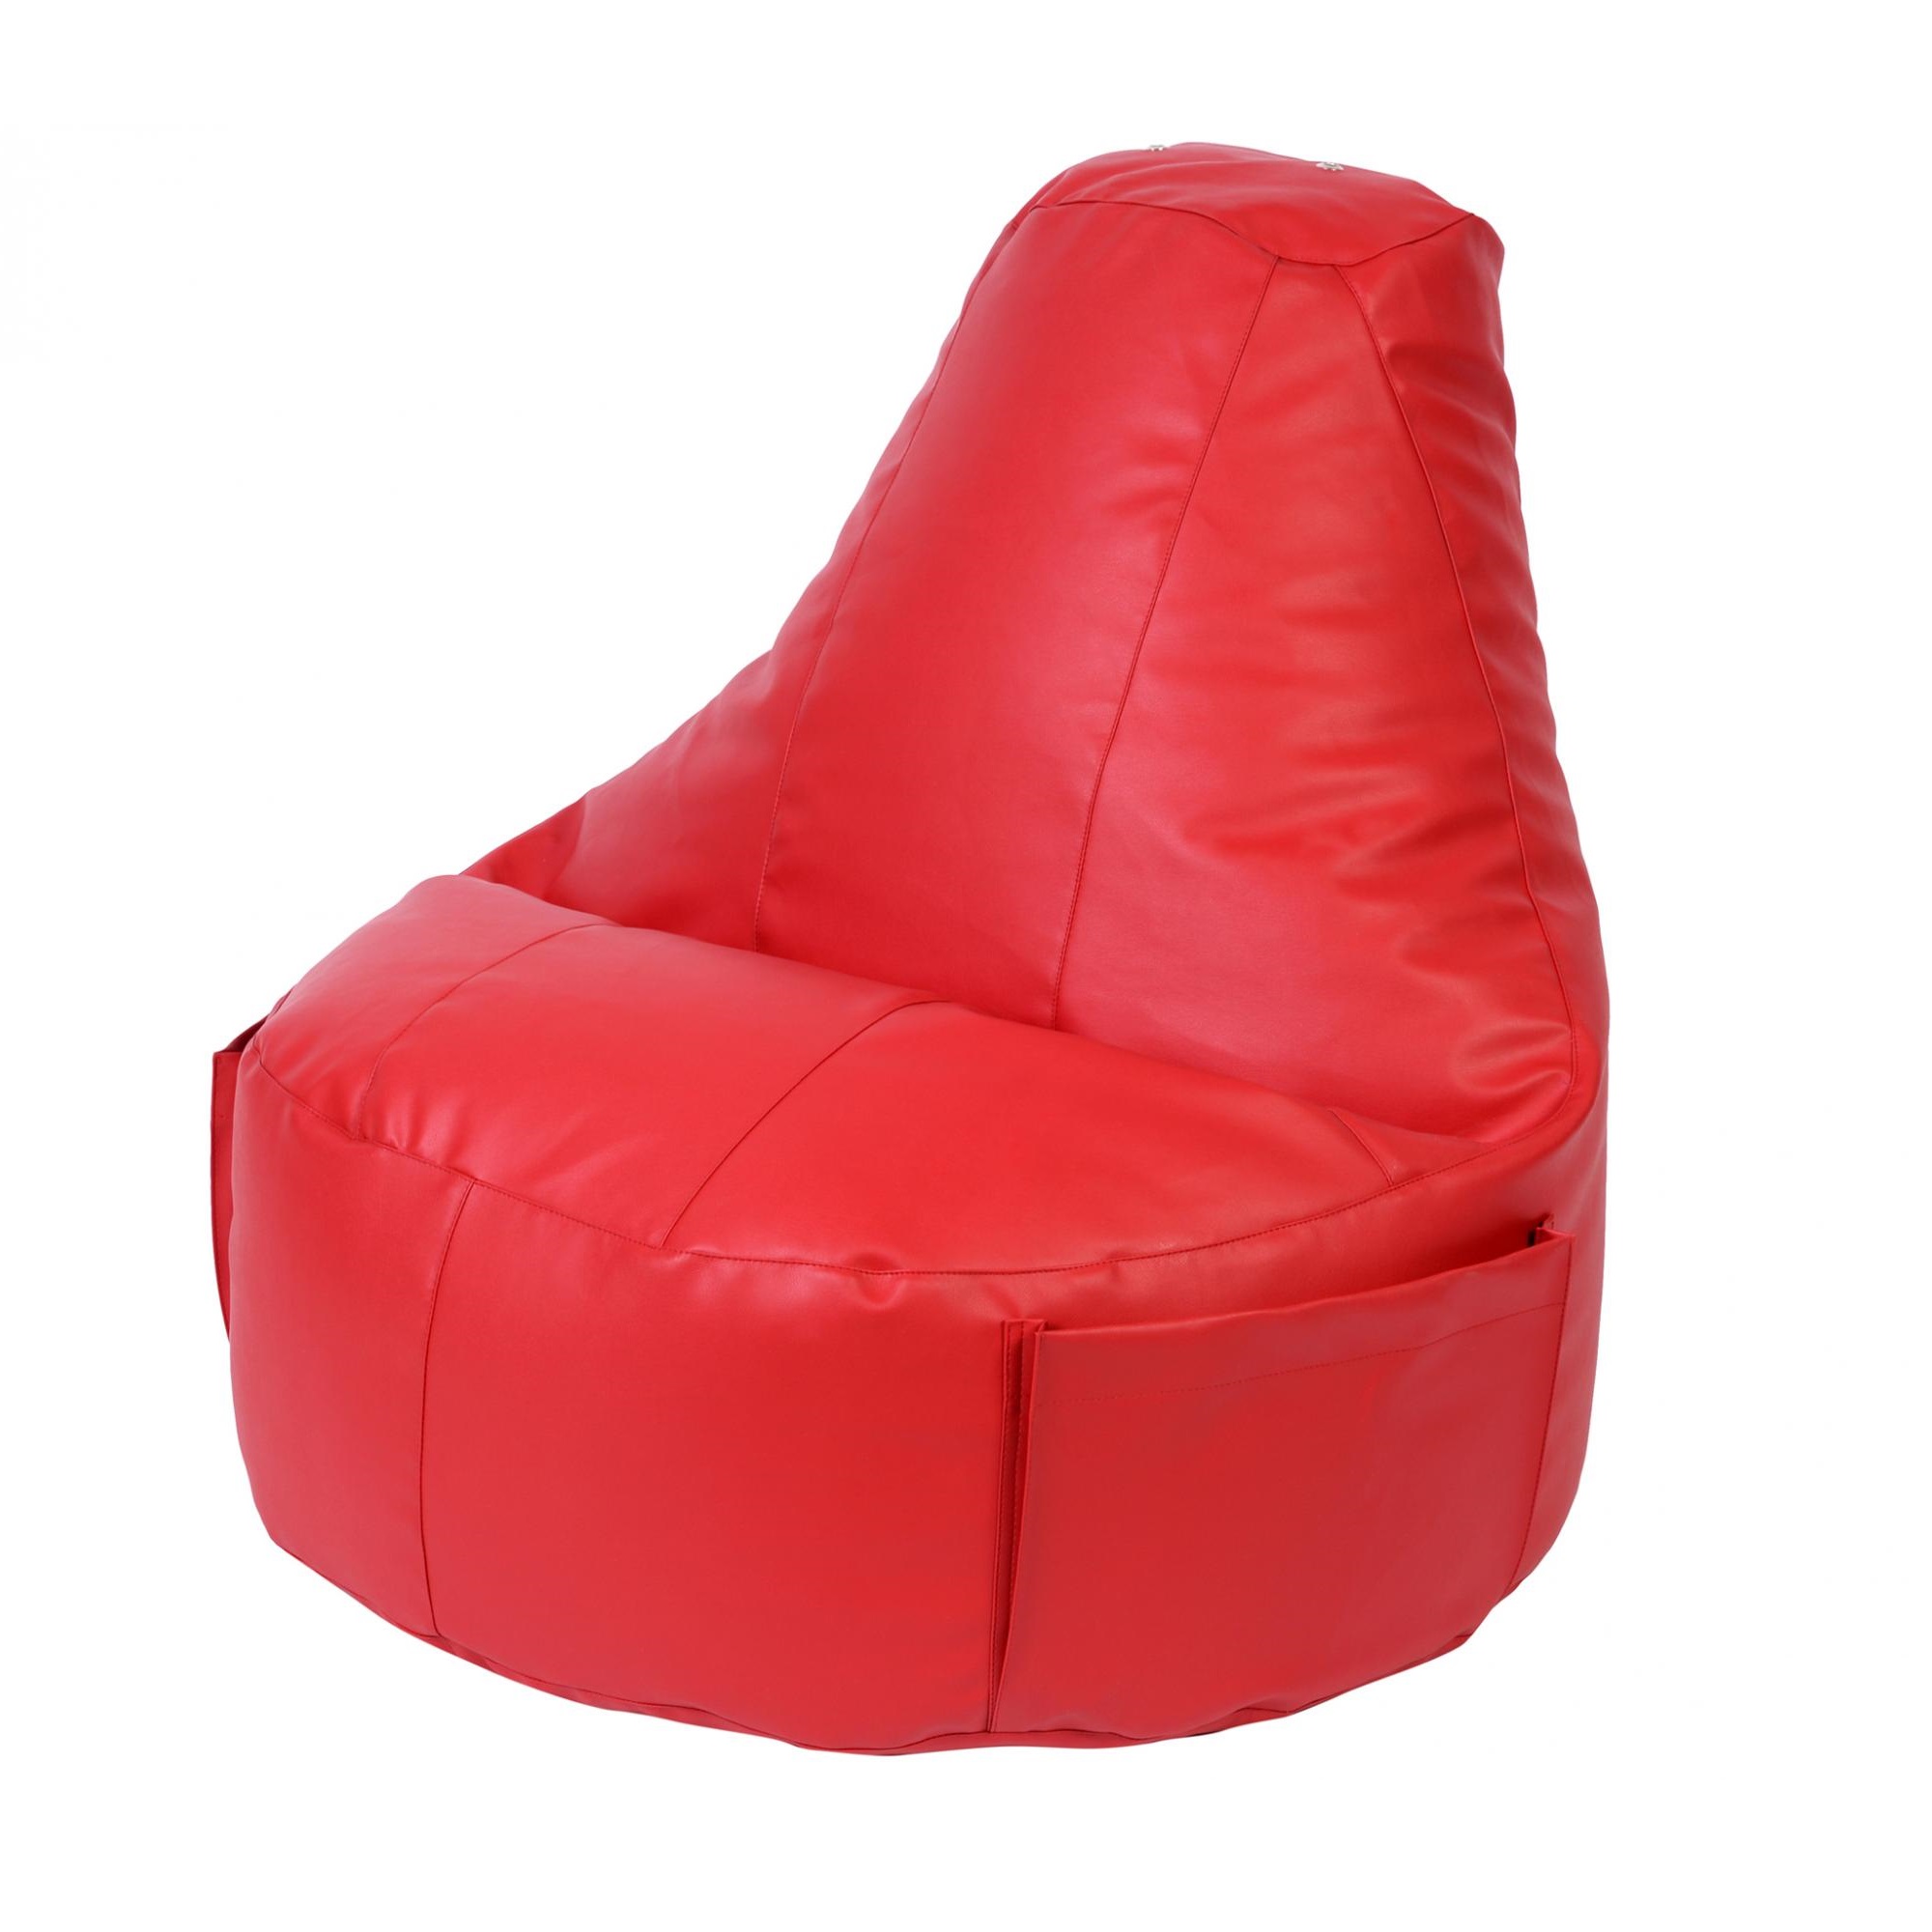 Кресло Dreambag Comfort красное экокожа 150x90 см кресло мешок ашли голубая экокожа xl